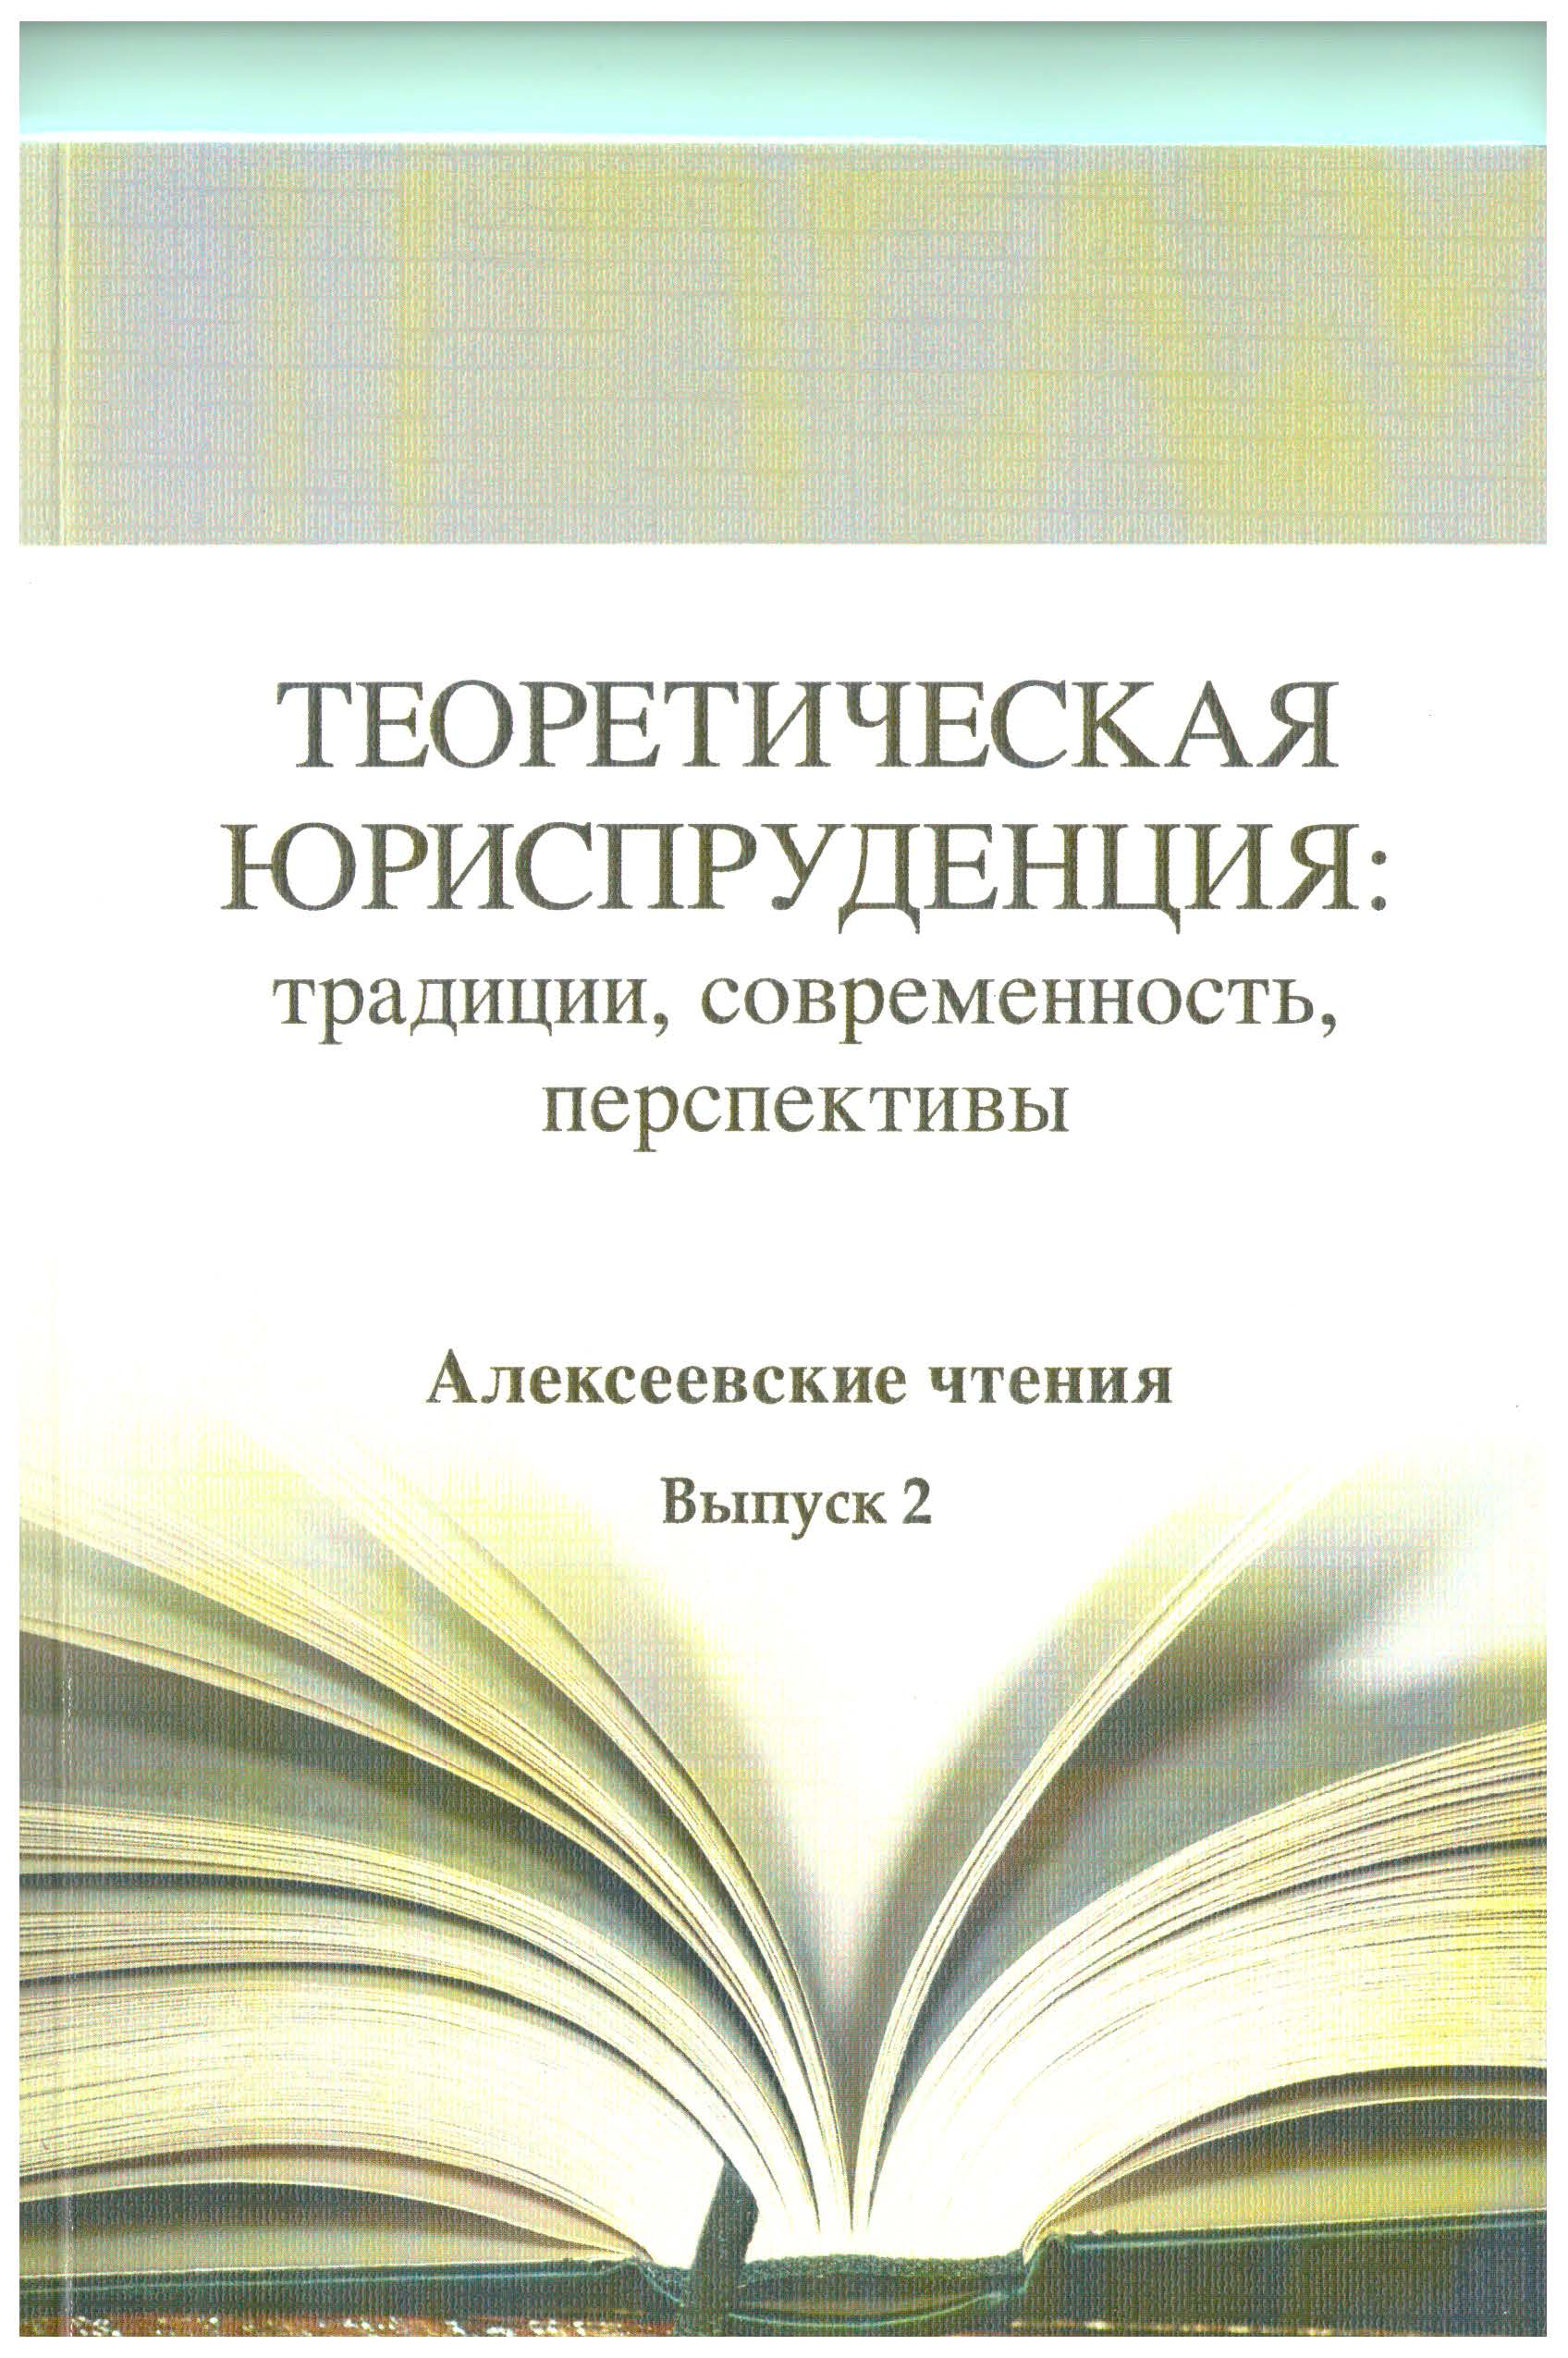 Теоретическая юриспруденция: традиции, современность, перспективы. Алексеевские чтения